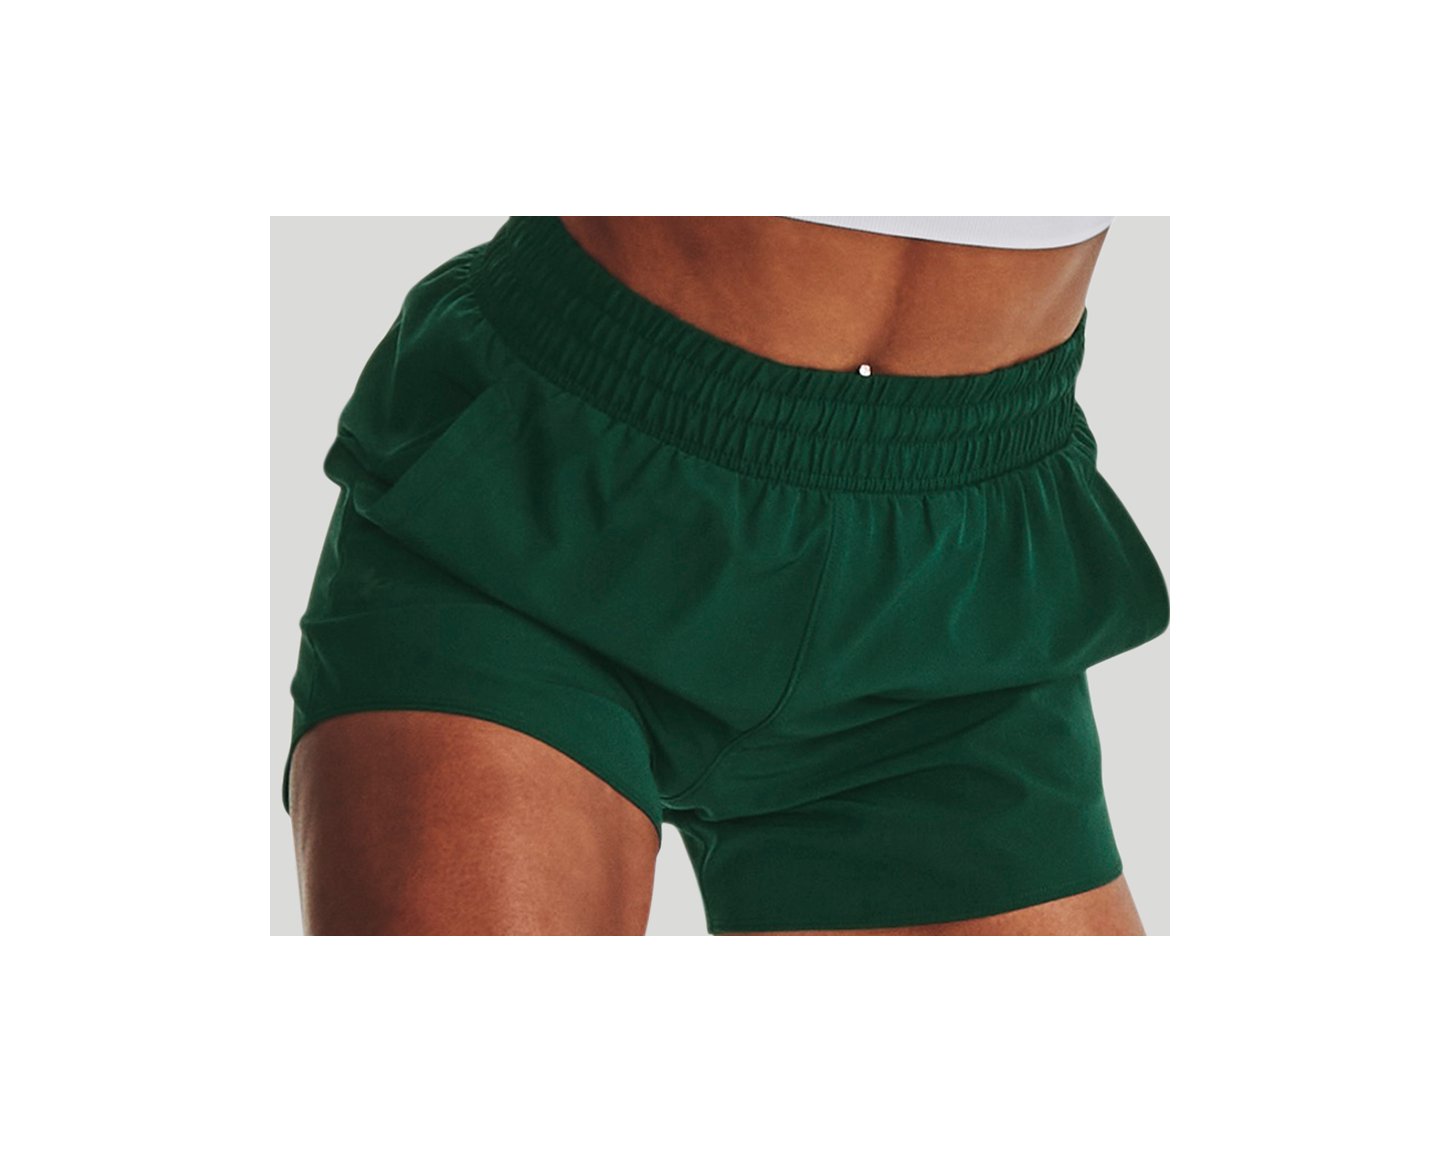 Fleece Lined Leggings (2 colors available) – Shop Denison University